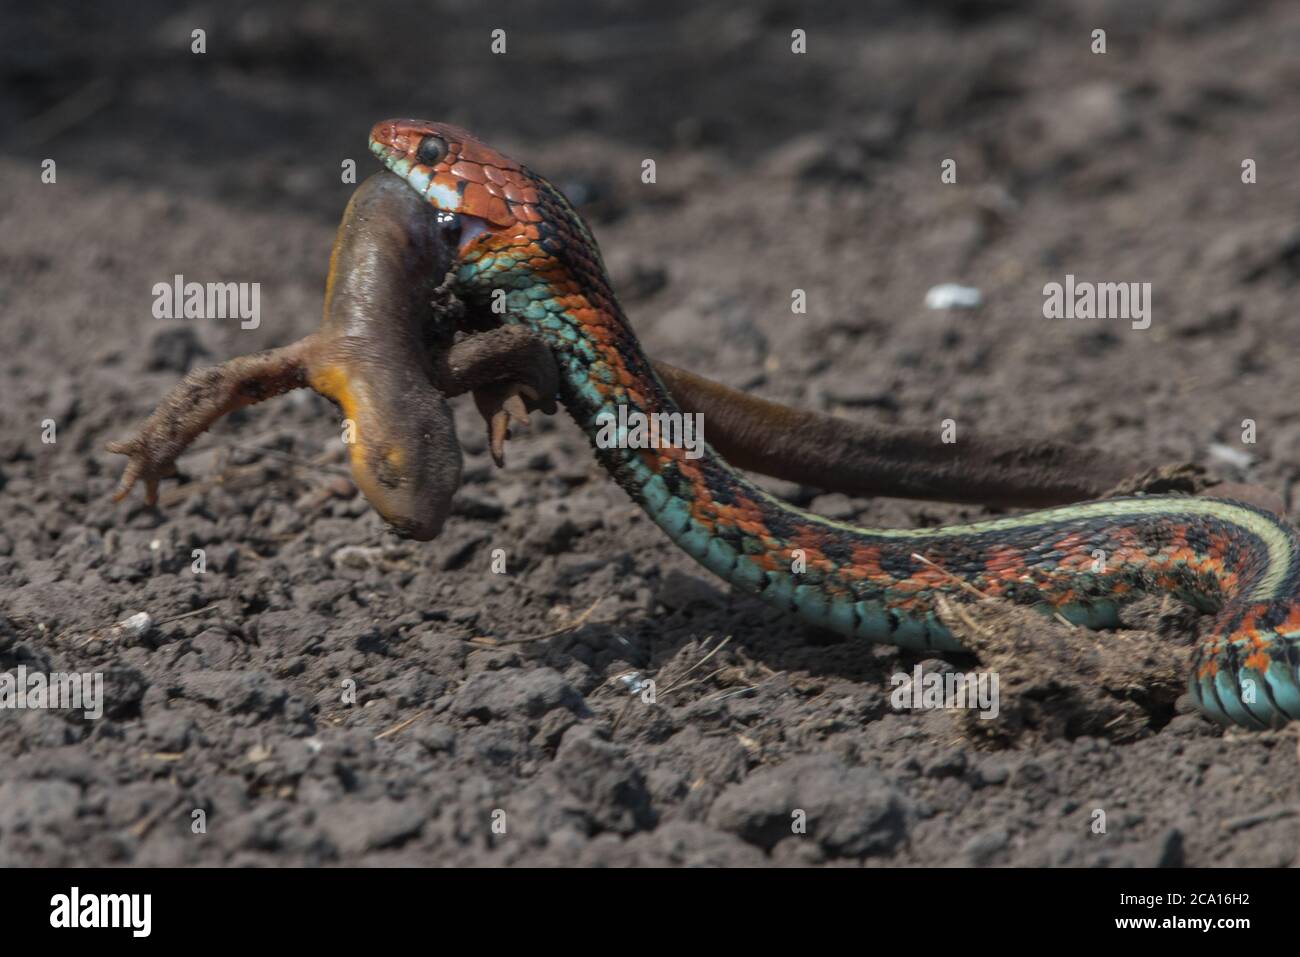 Una serpiente de cola roja de california (Thamnophis sirtalis infernalis) comiendo un newt (Taricha torosa), 1 de los pocos depredadores que pueden manejar las toxinas del newt. Foto de stock